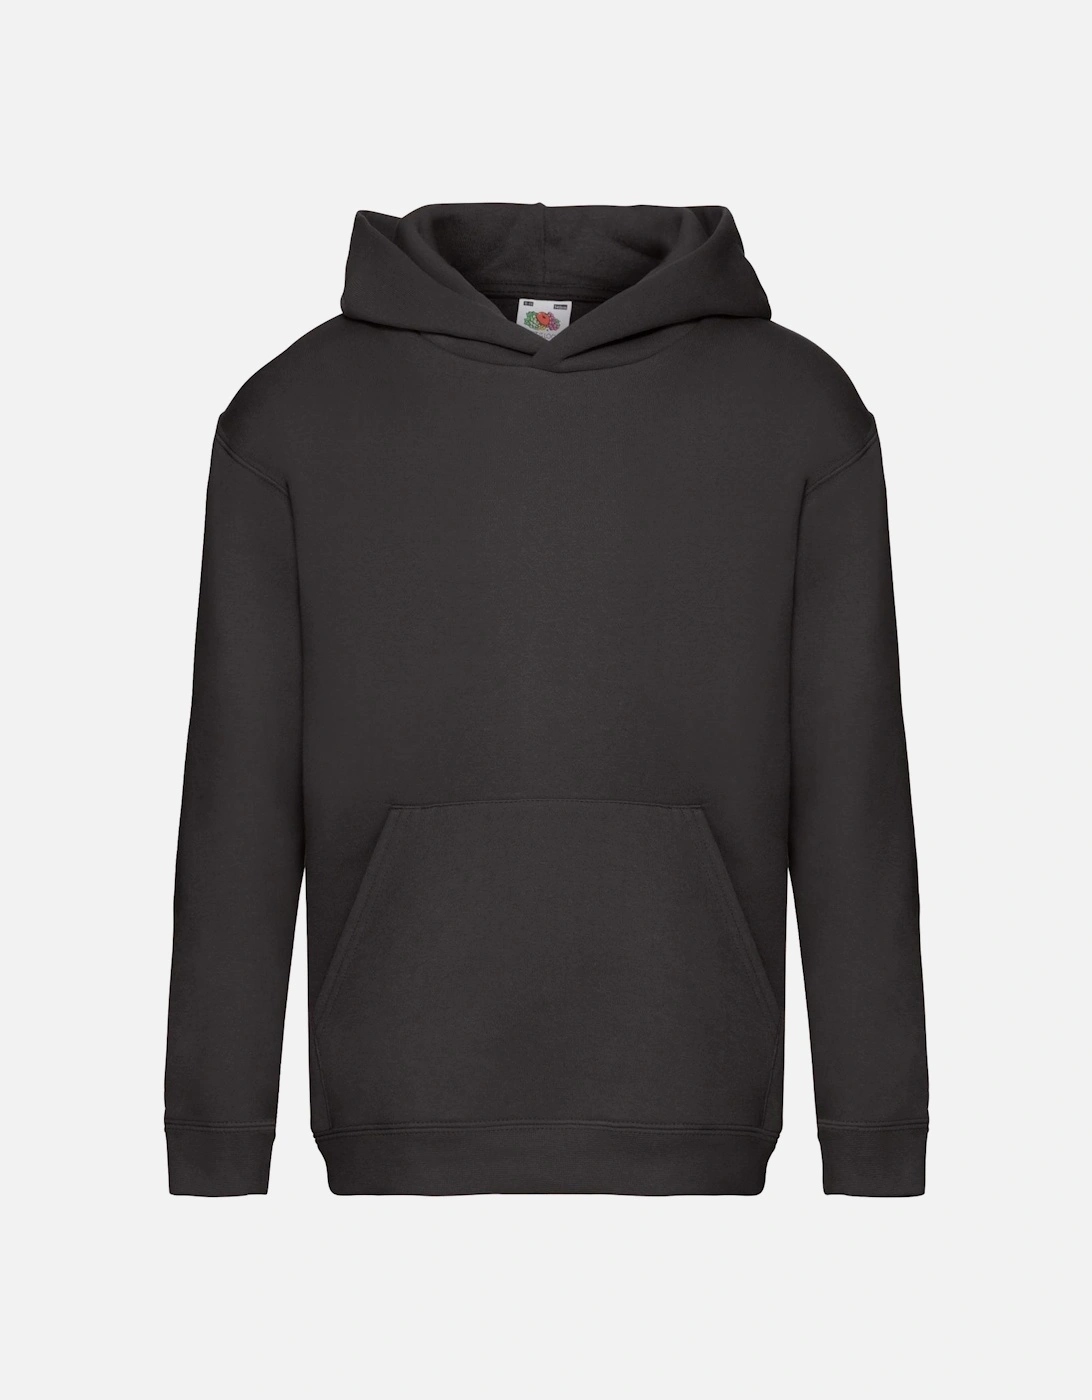 Kids Unisex Premium 70/30 Hooded Sweatshirt / Hoodie, 4 of 3